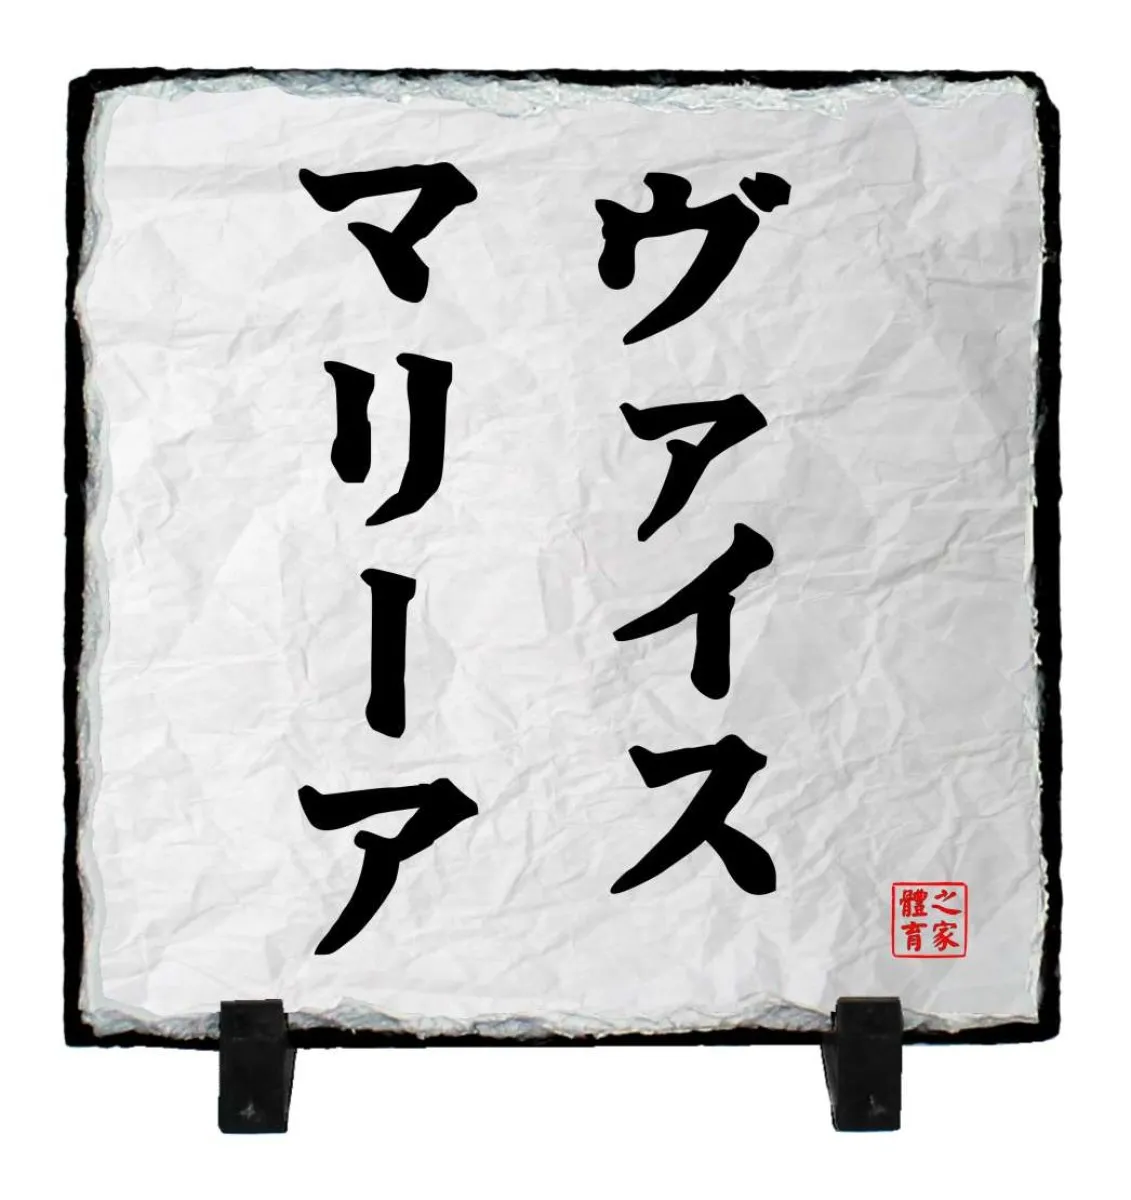 póster Funakoshi - Kopie - Kopie